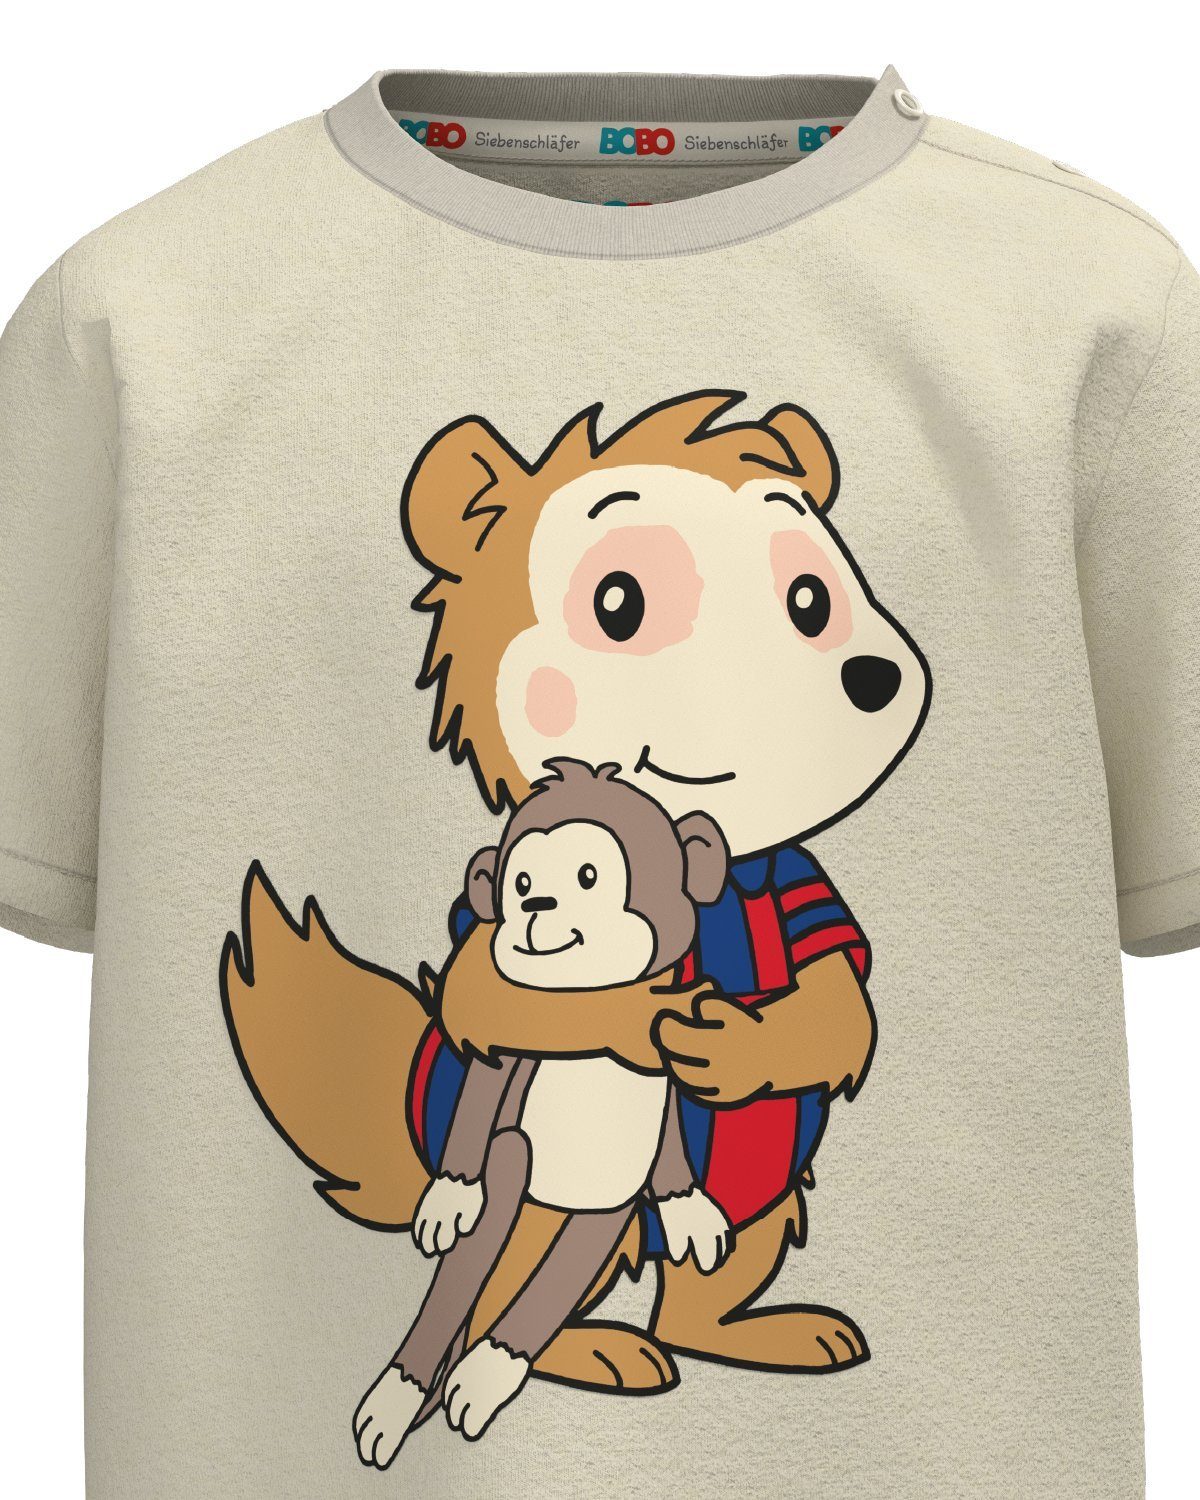 T-Shirt unisex Bio-Baumwolle, "Cuddle" Bobo bedruckt, % 100 Siebenschläfer